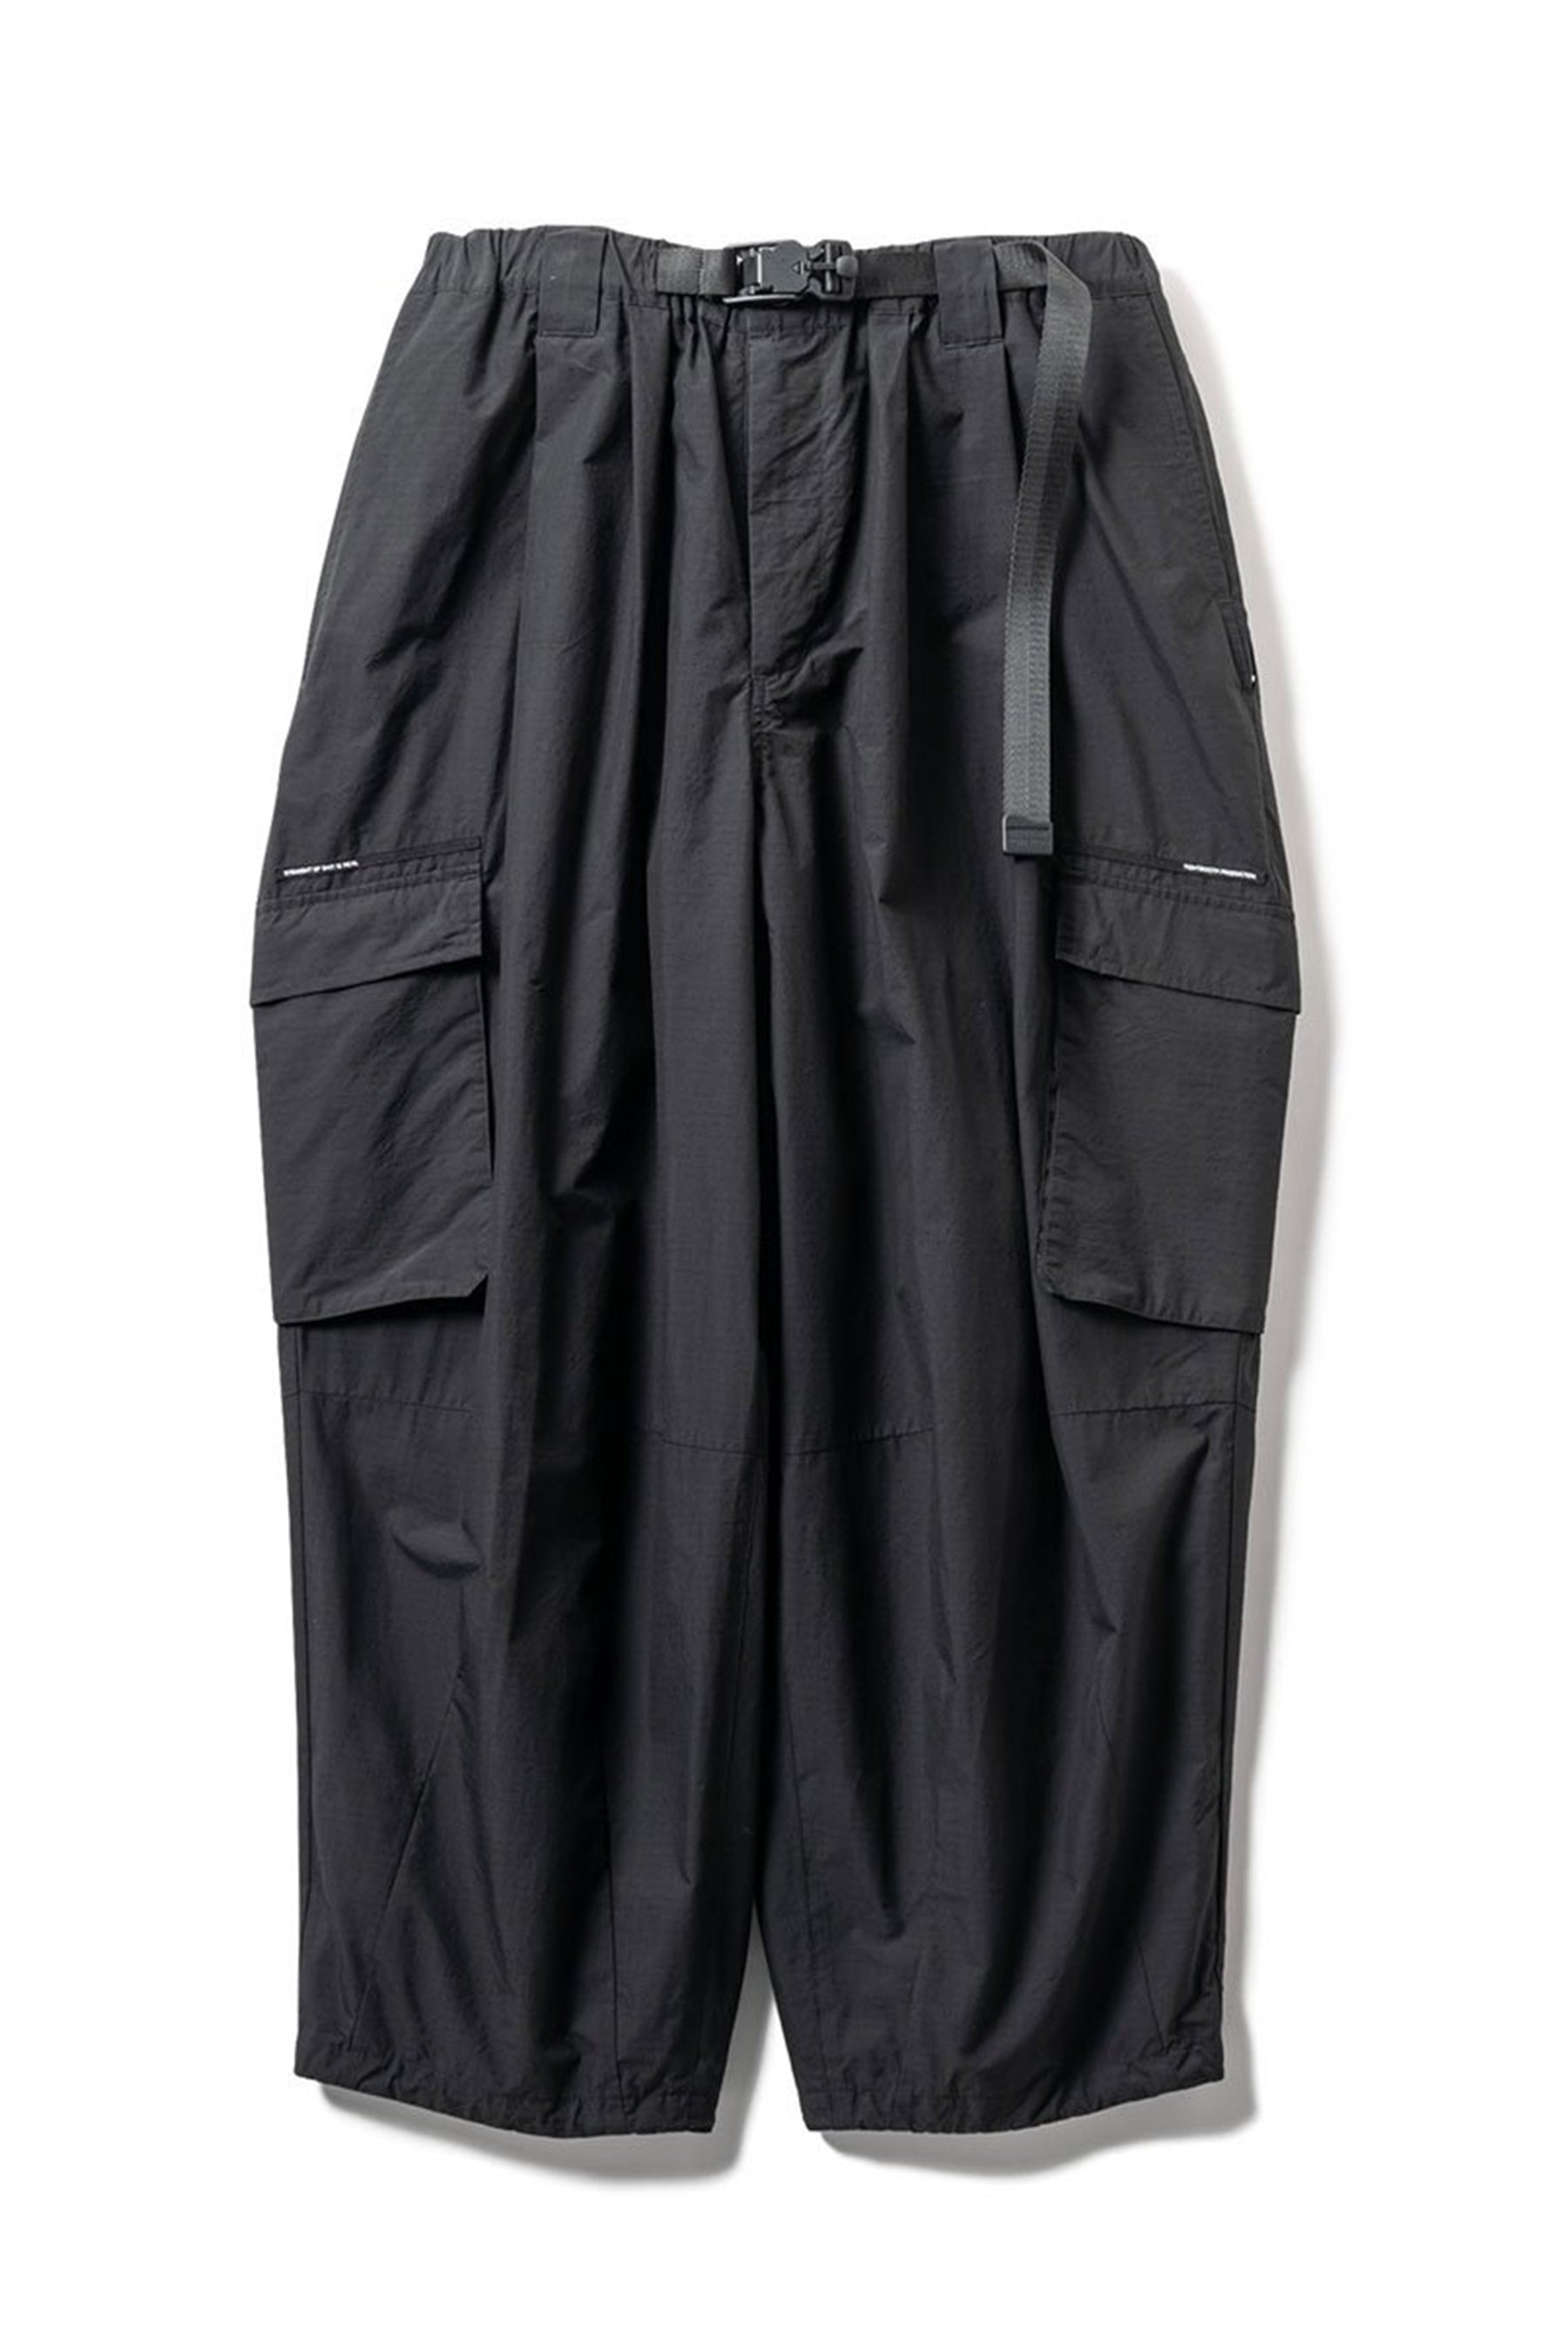 新しい Ripstop Rib Design Pants BLACK Green sikshaduniya.com